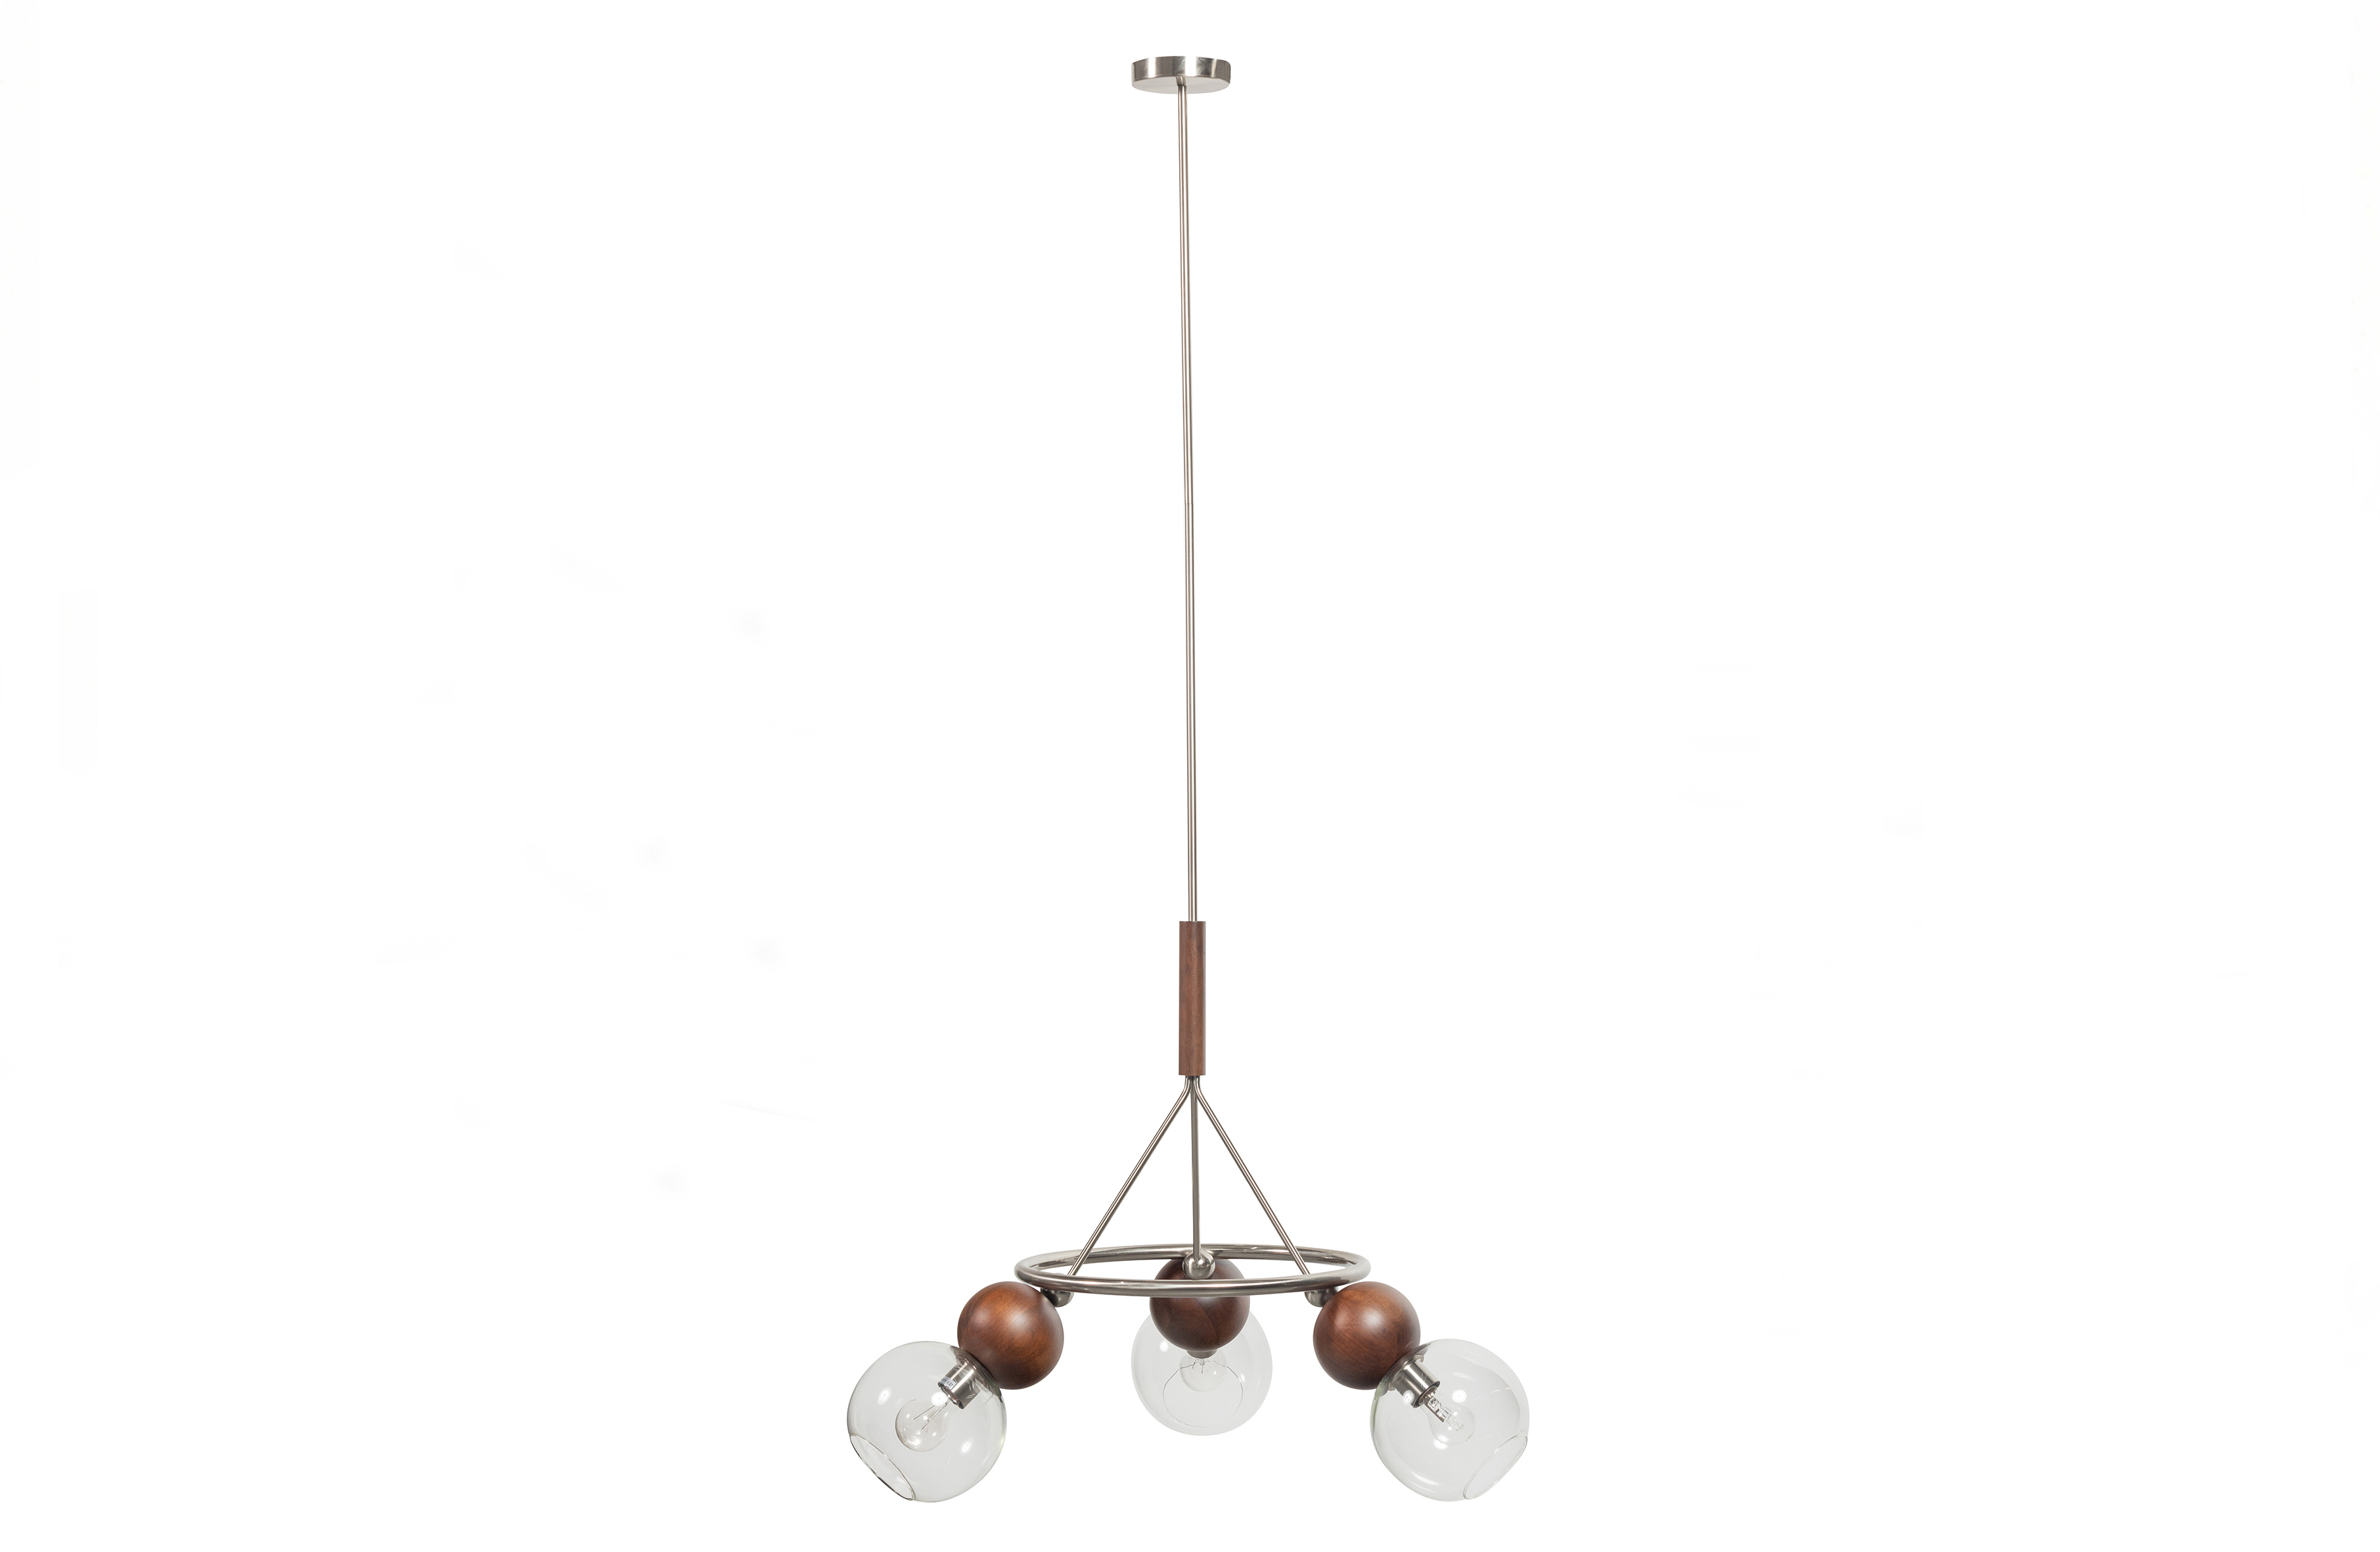 Billede af BEPUREHOME Babble loftlampe, m. 3 pærer - metal, brun valnøddetræ og klart glas